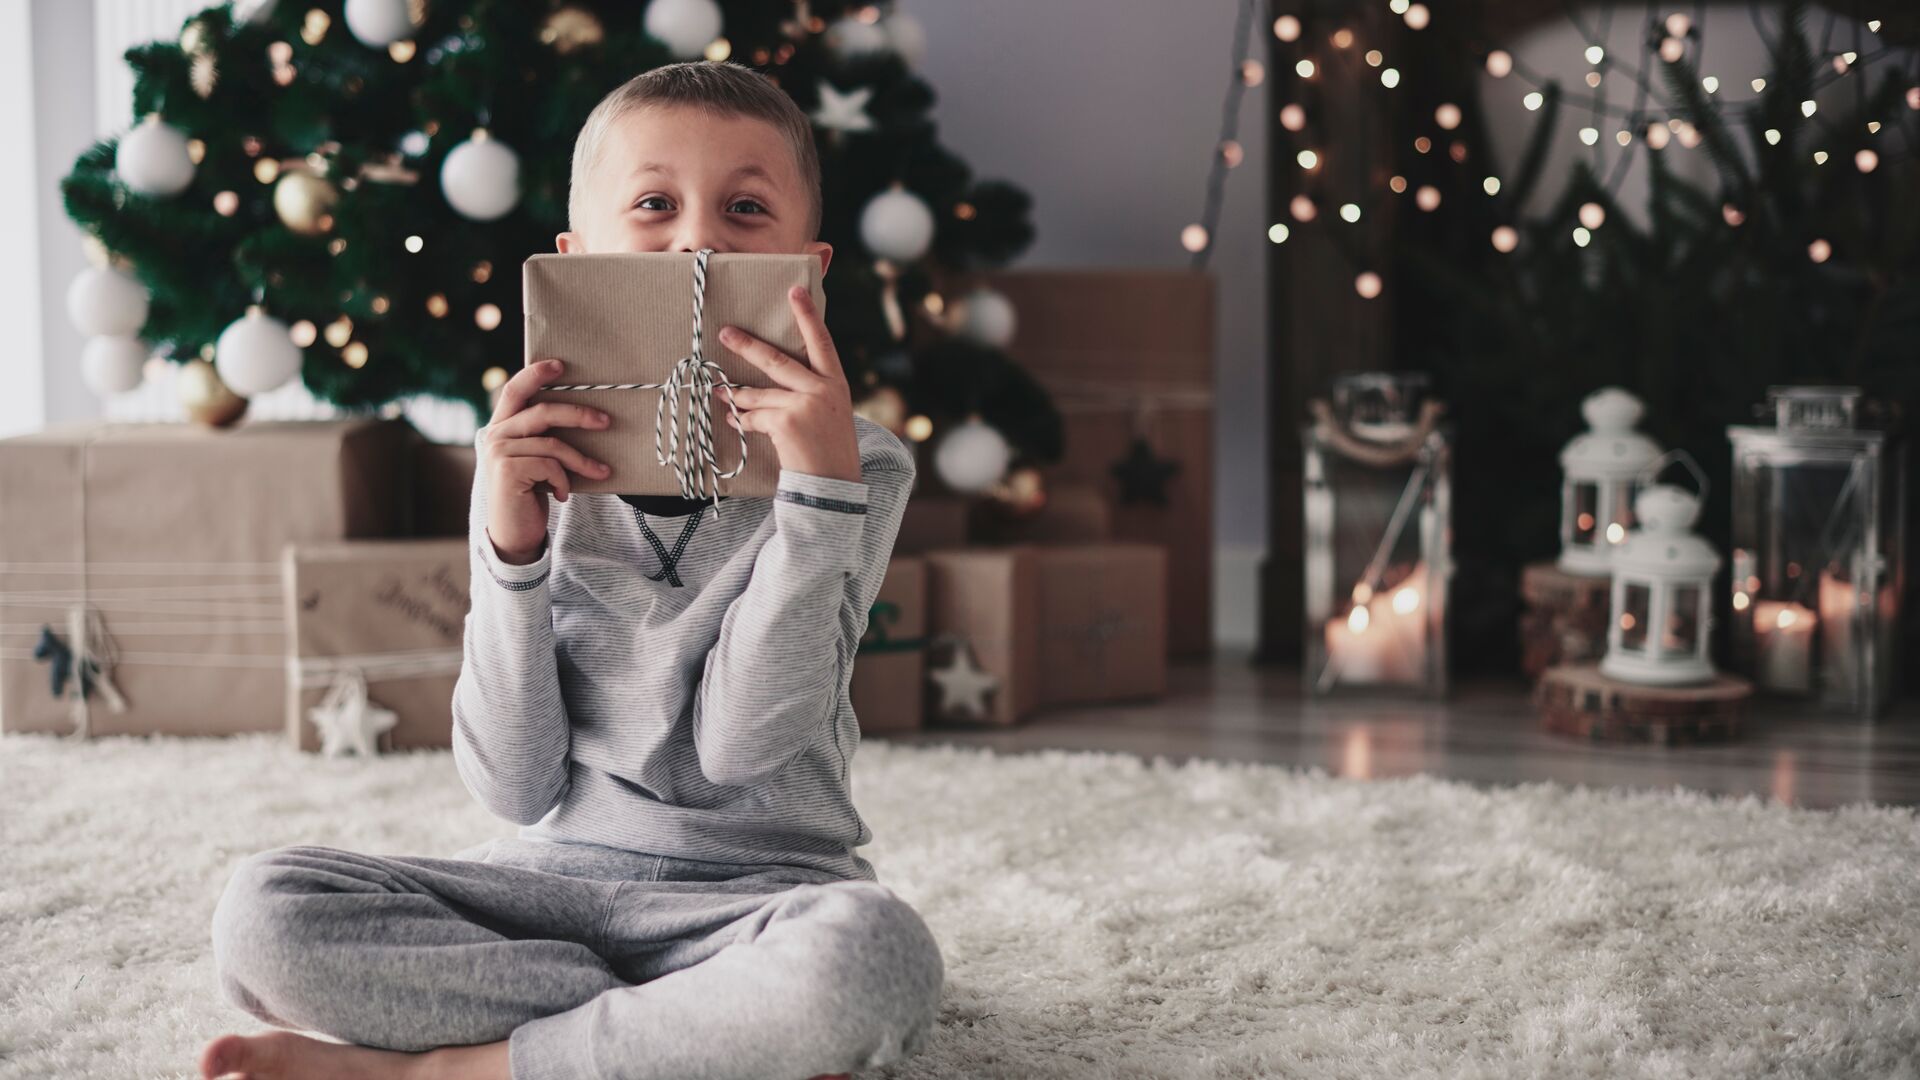 Les fêtes de Noël approchent à grands pas. Mais où ranger les cadeaux de vos enfants ? Découvrez nos meilleures idées de cachette pour vos cadeaux de Noël.